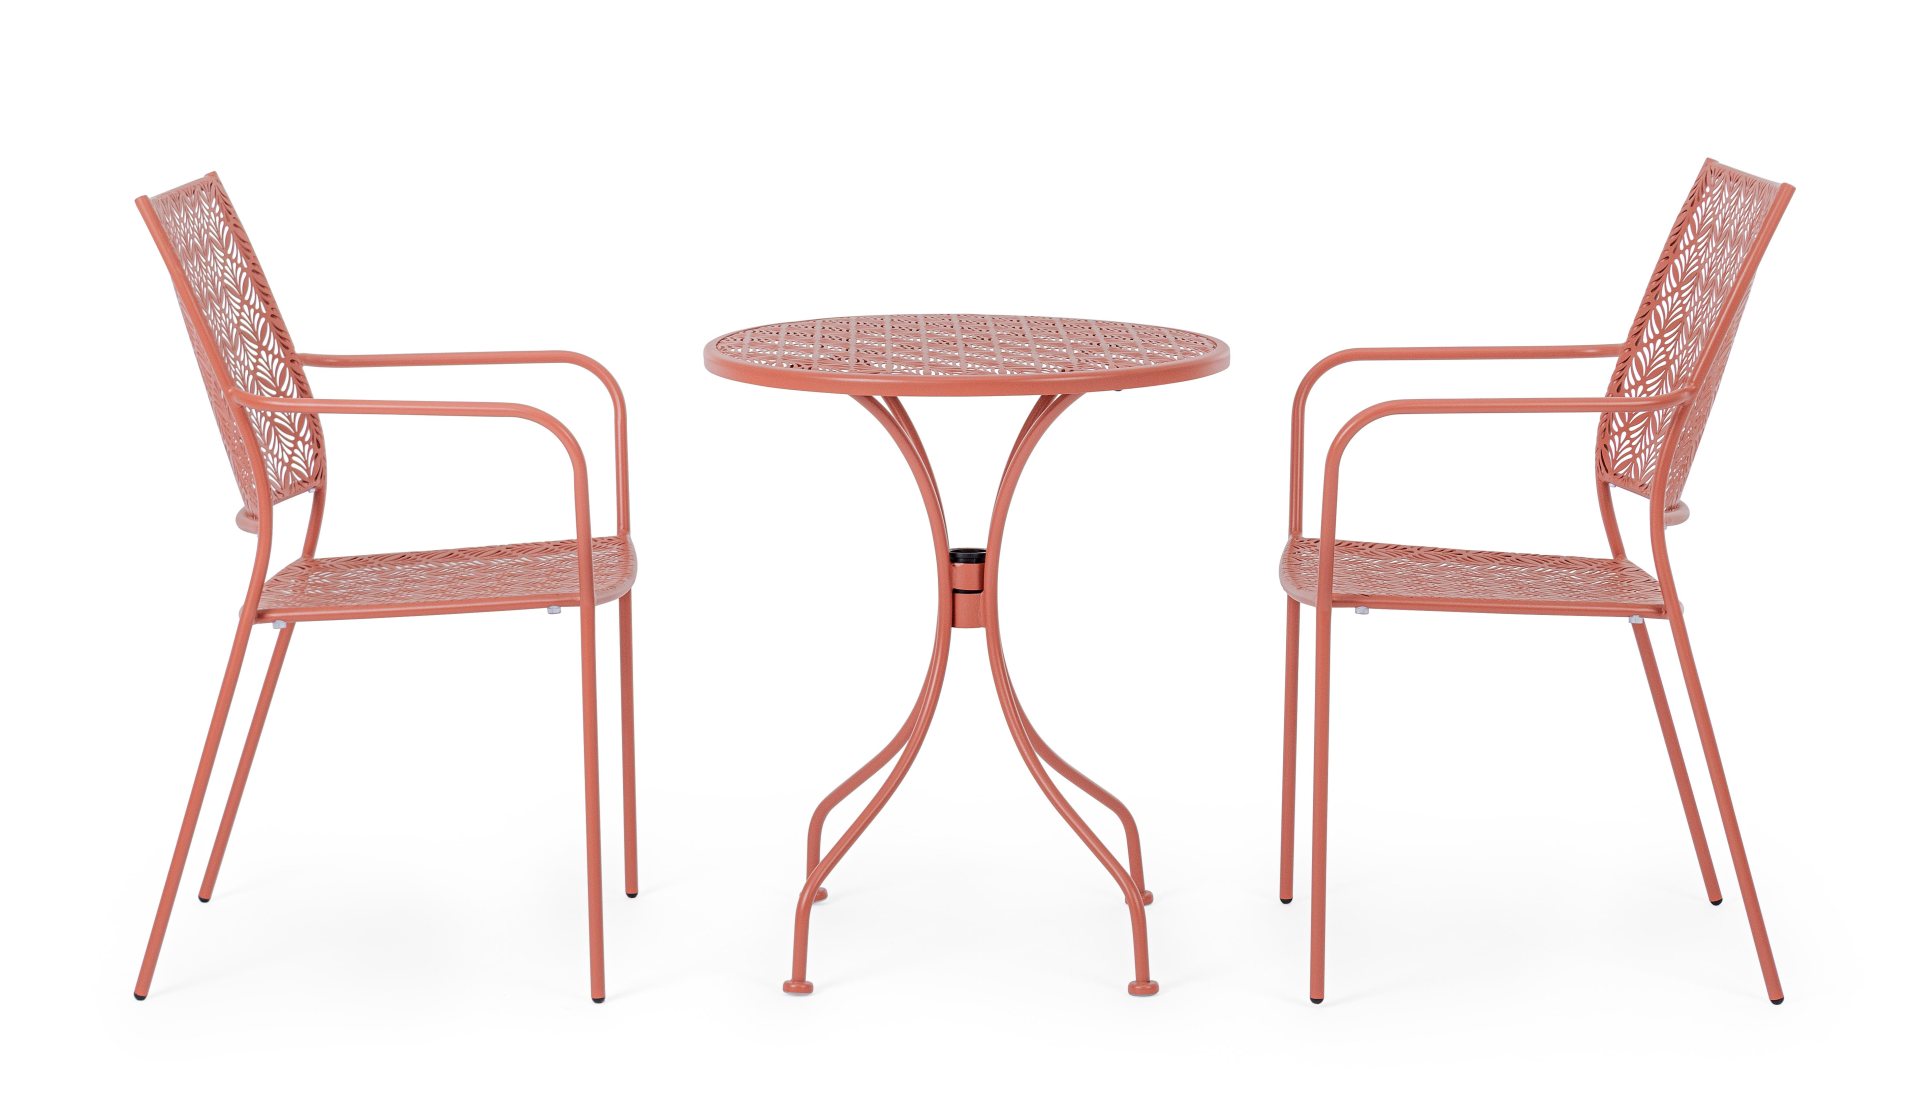 Der Gartentisch Lizette überzeugt mit seinem klassischen Design. Gefertigt wurde er aus Aluminium, welches einen roten Farbton besitzt. Das Gestell ist aus auch Aluminium und hat eine rote Farbe. Der Tisch verfügt über einen Durchmesser von 60 cm und ist 